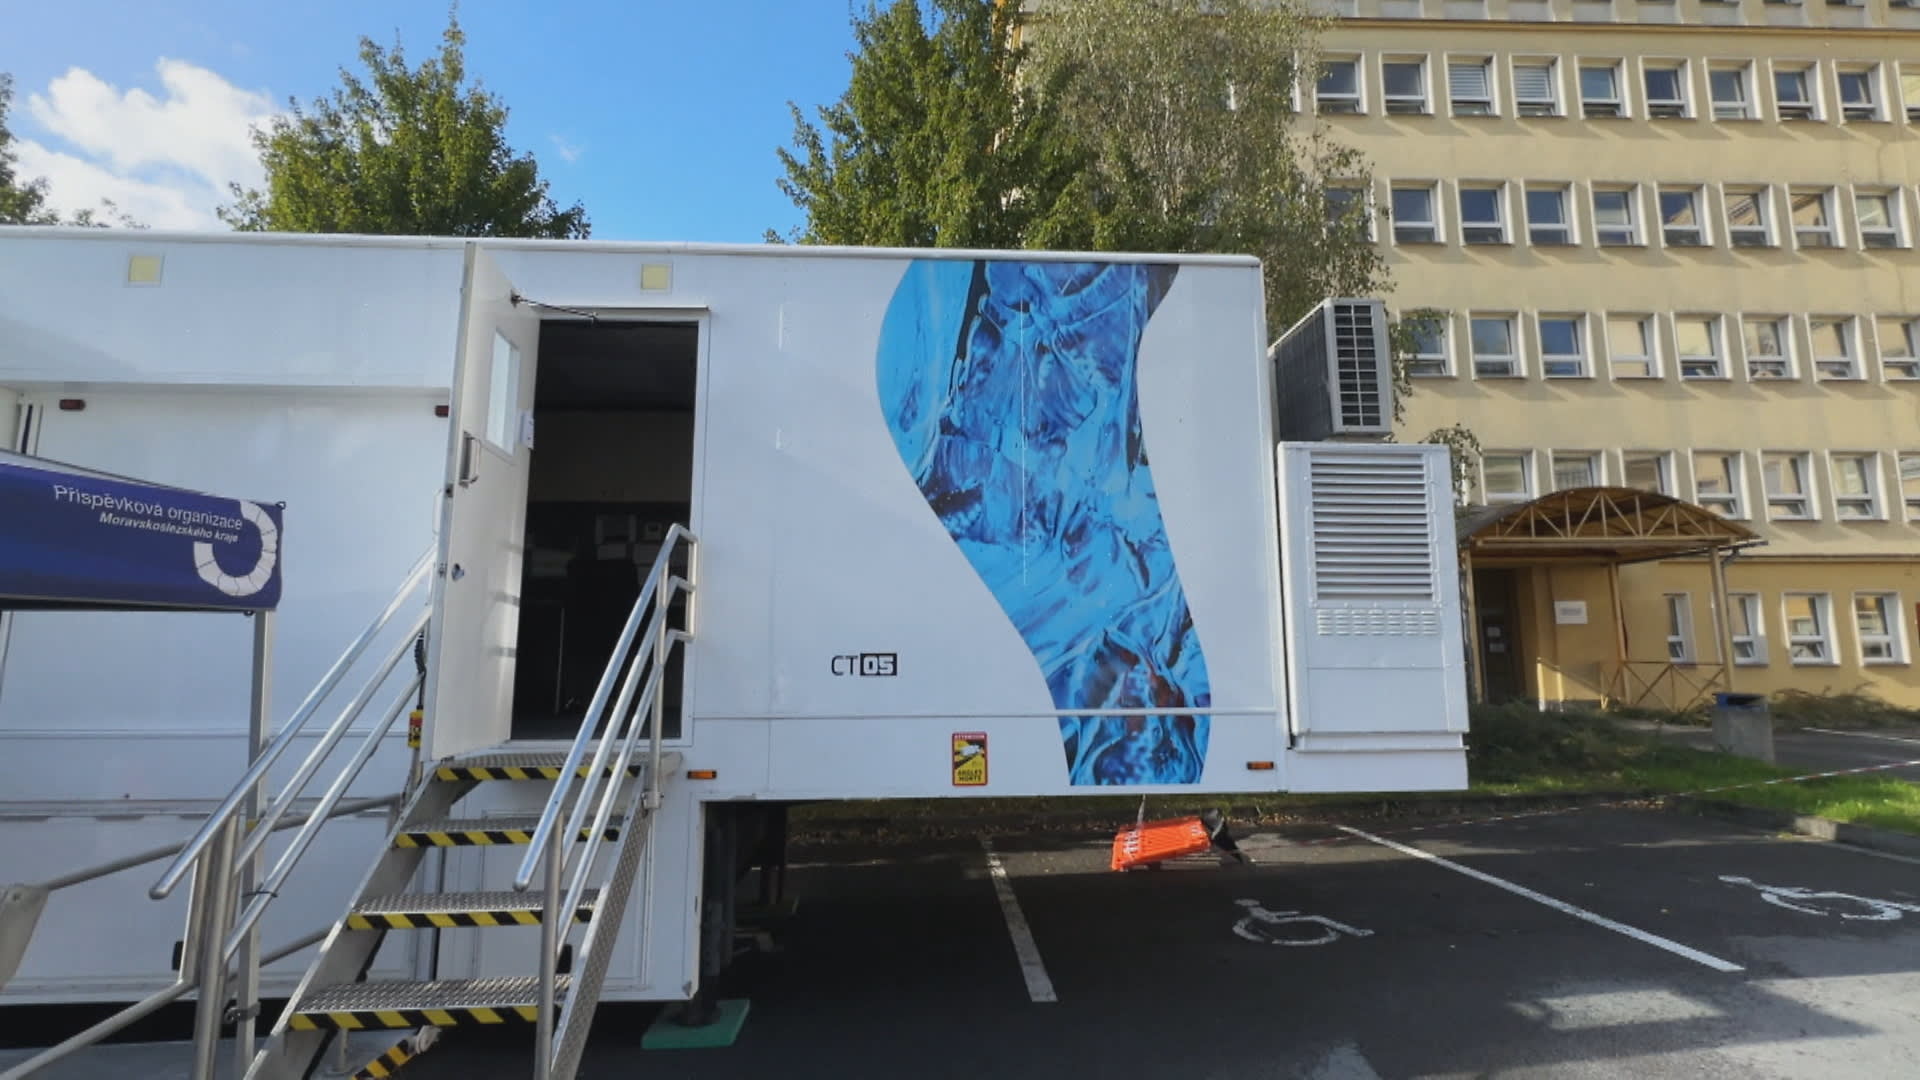 Třinecká nemocnice provádí vyšetření CT na dvoře v kamionovém návěsu.